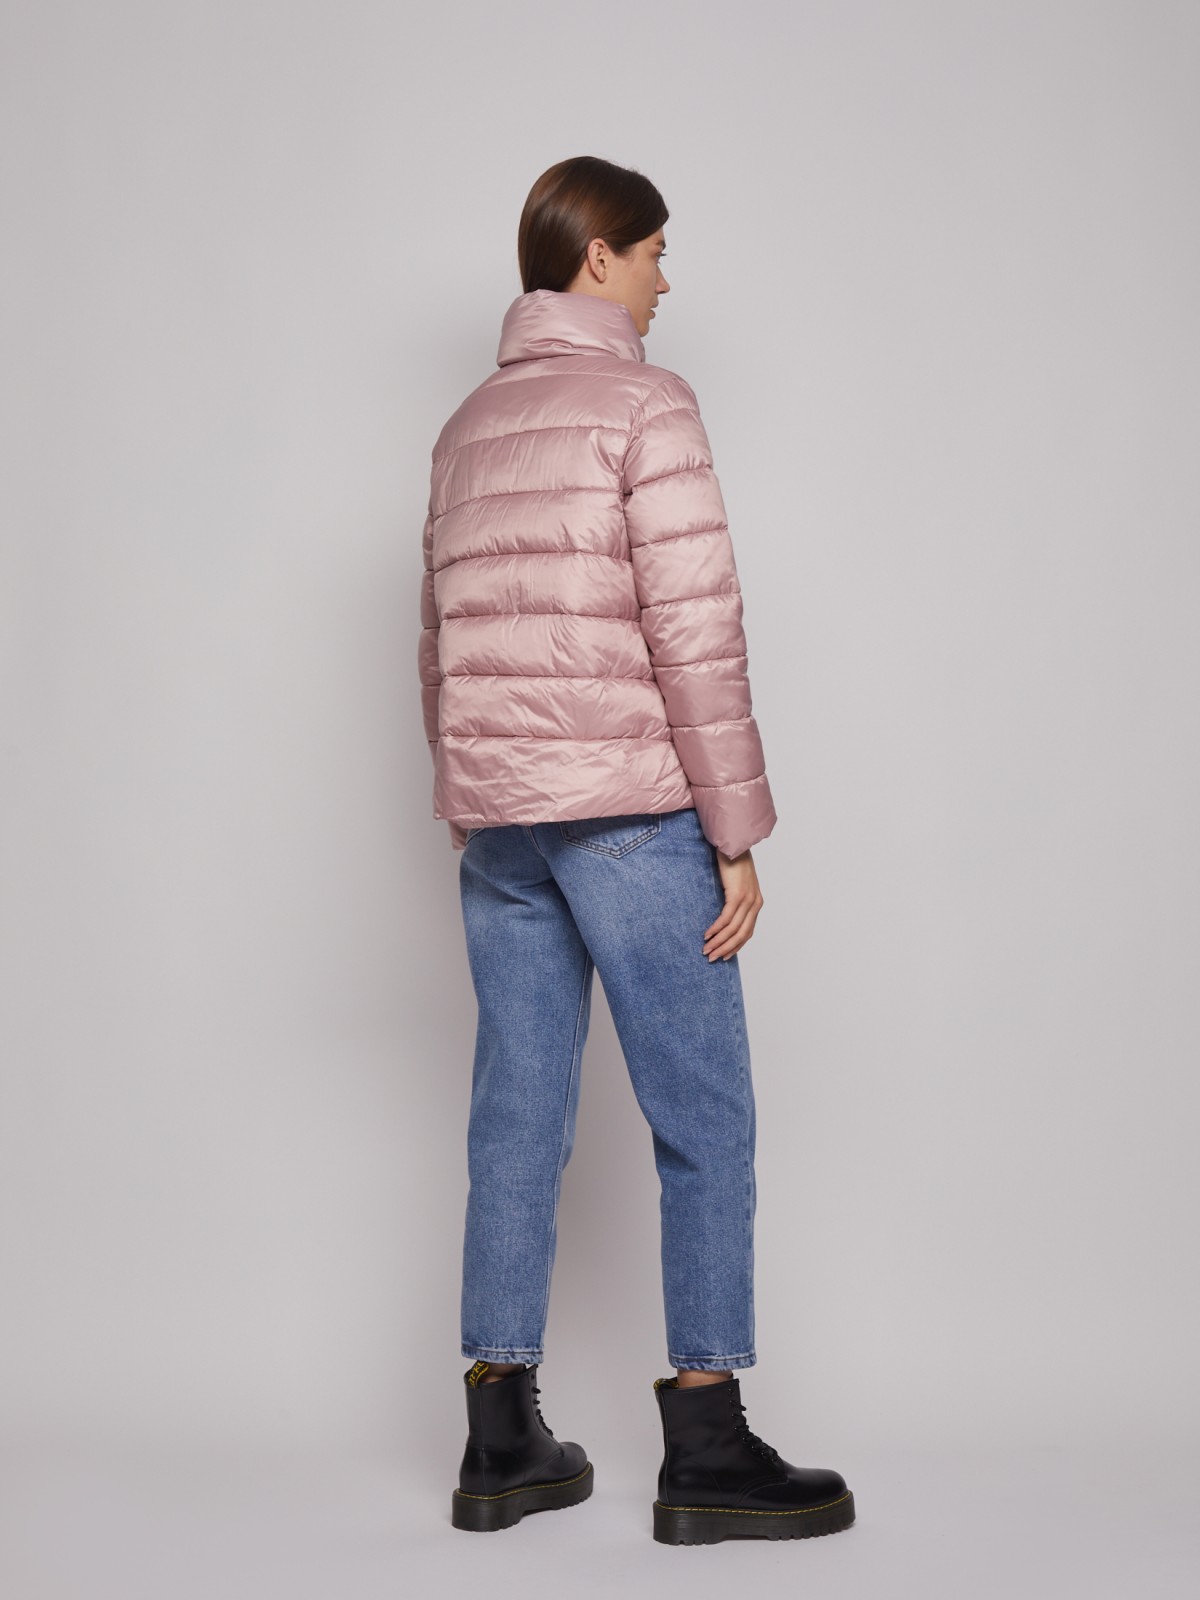 Тёплая куртка с воротником-стойкой zolla 022335102054, цвет розовый, размер XS - фото 5